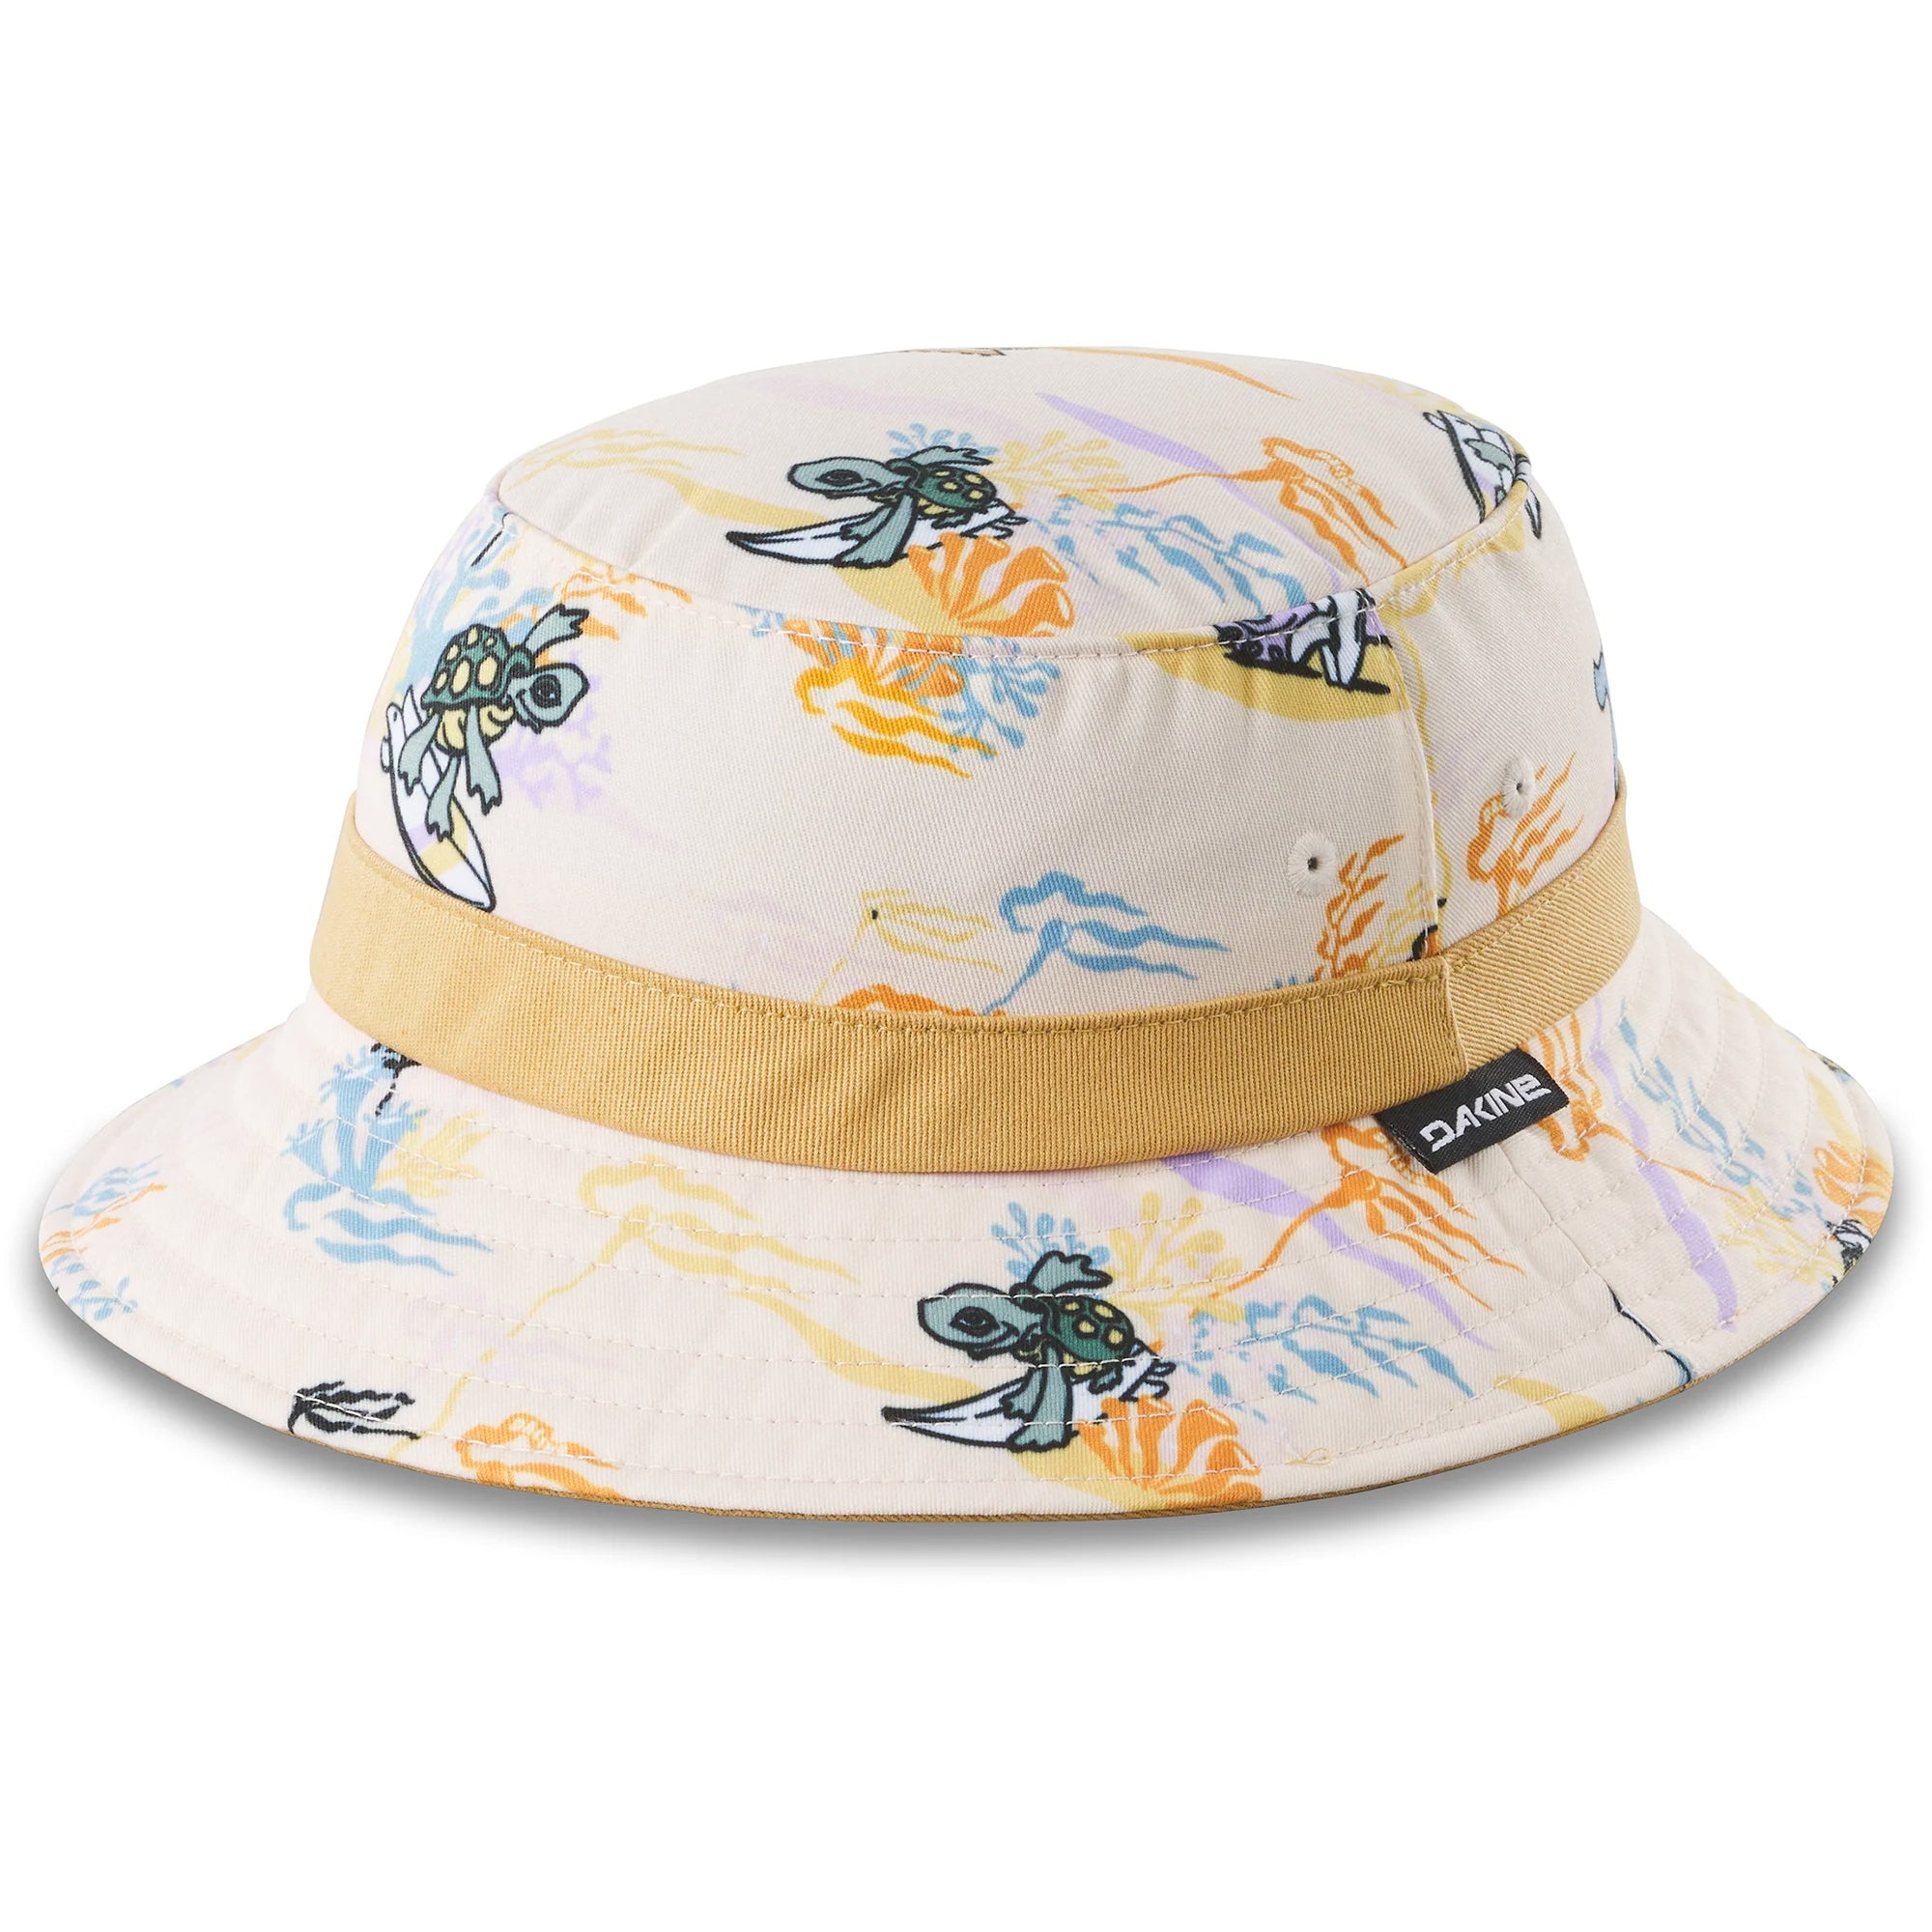 Dakine Beach Bum Youth Bucket Hat